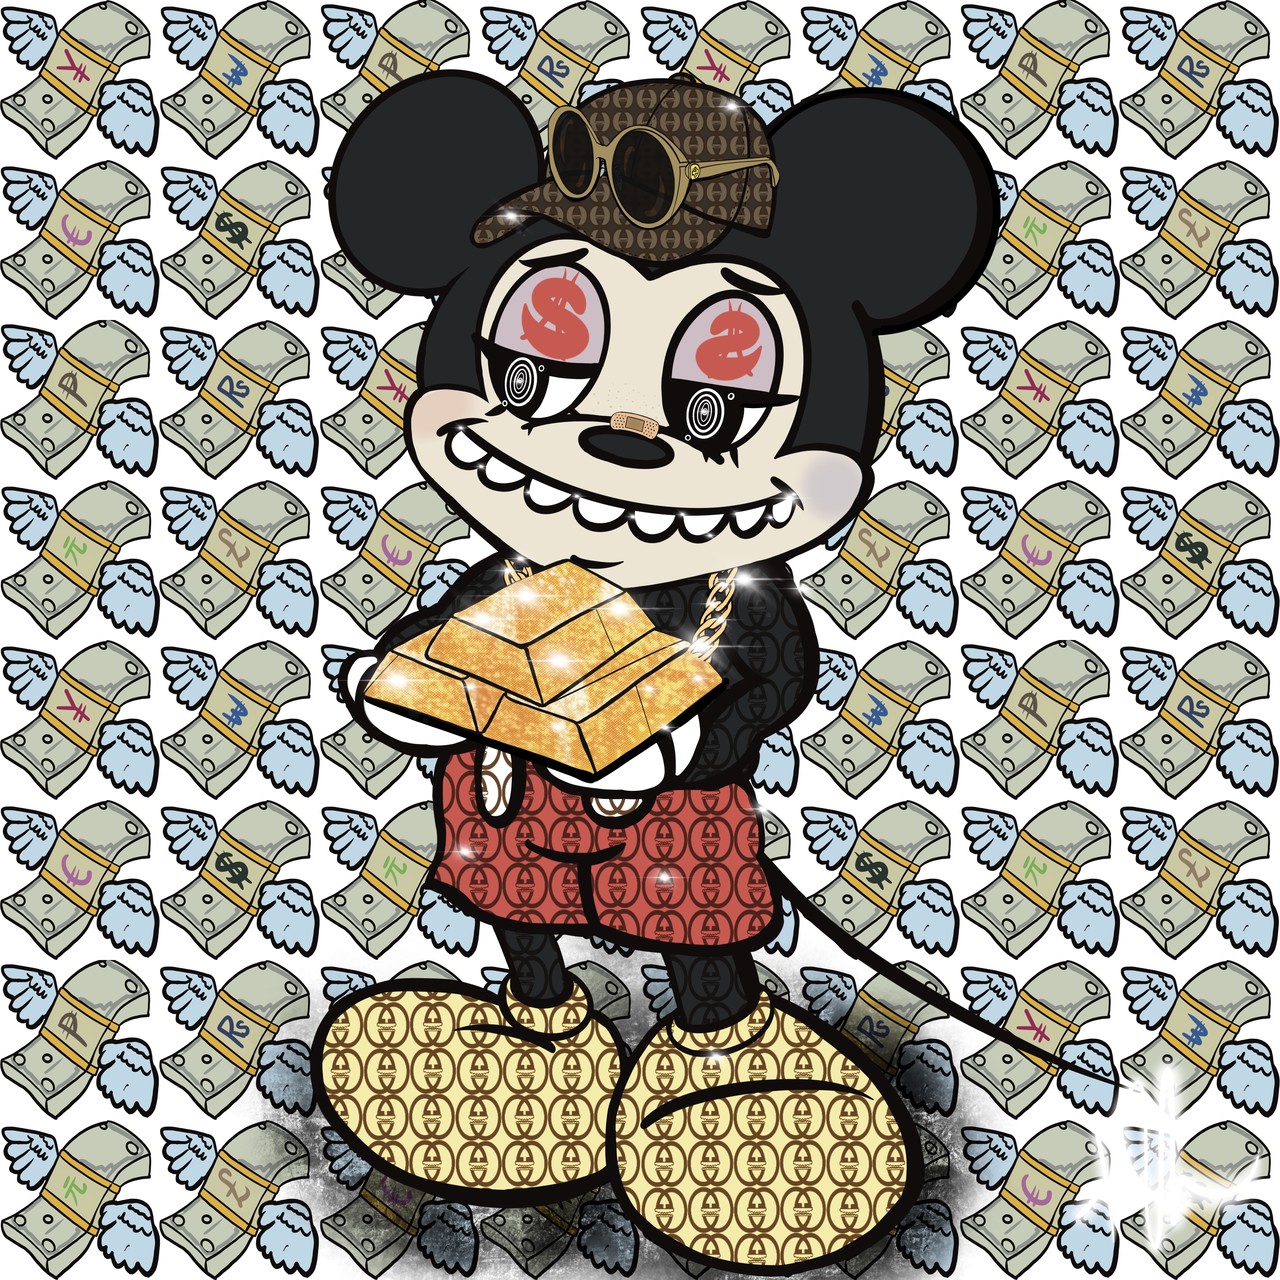 한국소년 / 행운을 주는 미키마우스 머니-미 (The lucky mickey mouse Money-Me) / Giclee on canvas / 60 x 60cm / 2022